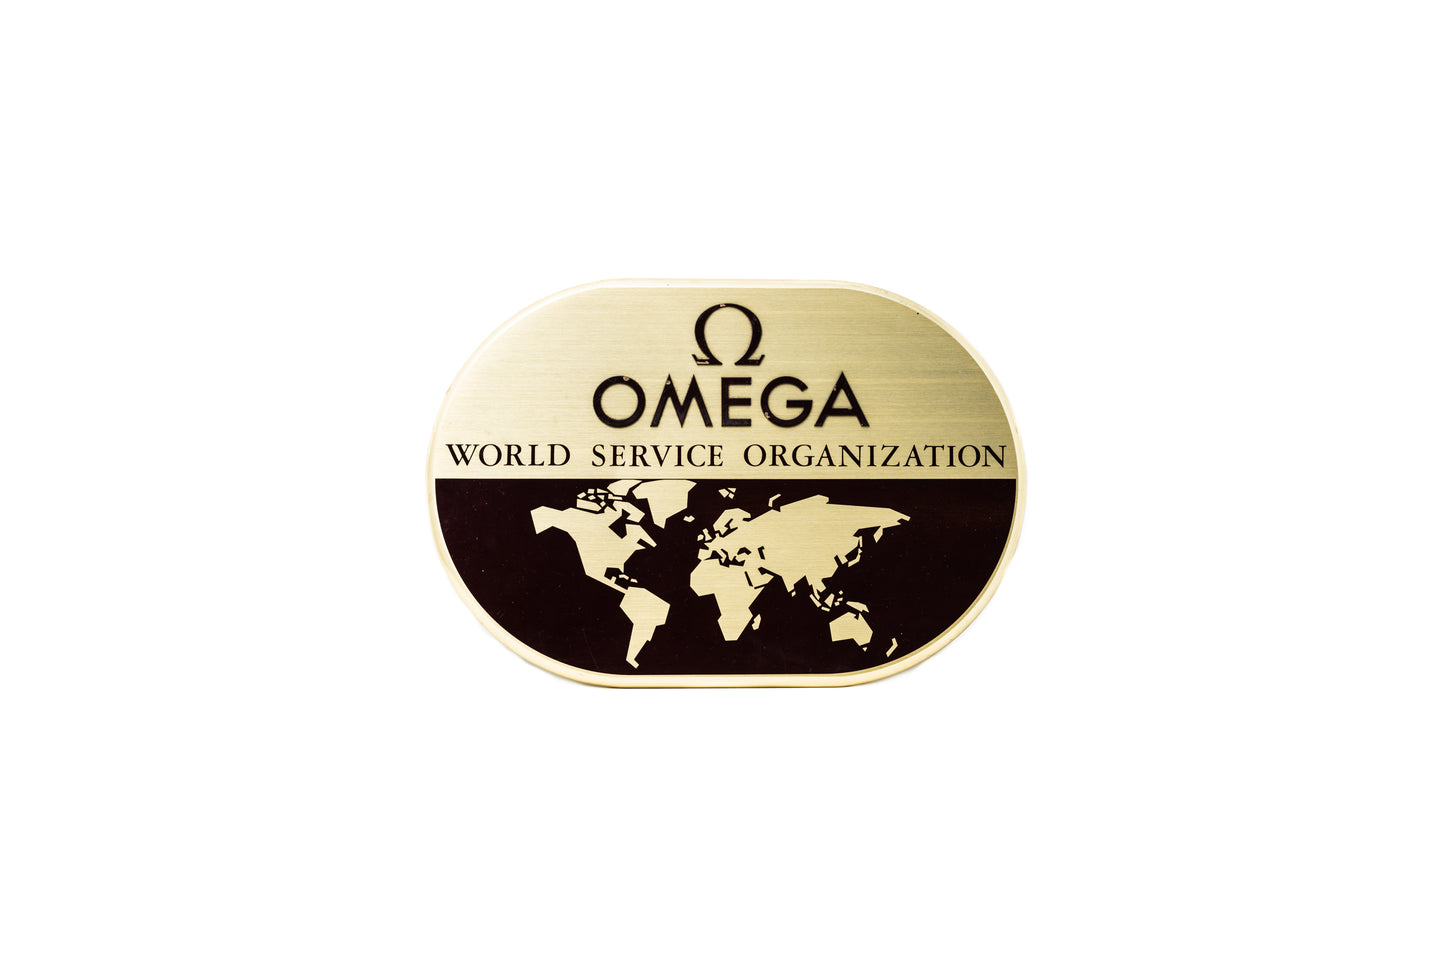 Omega World Service Organization Signage